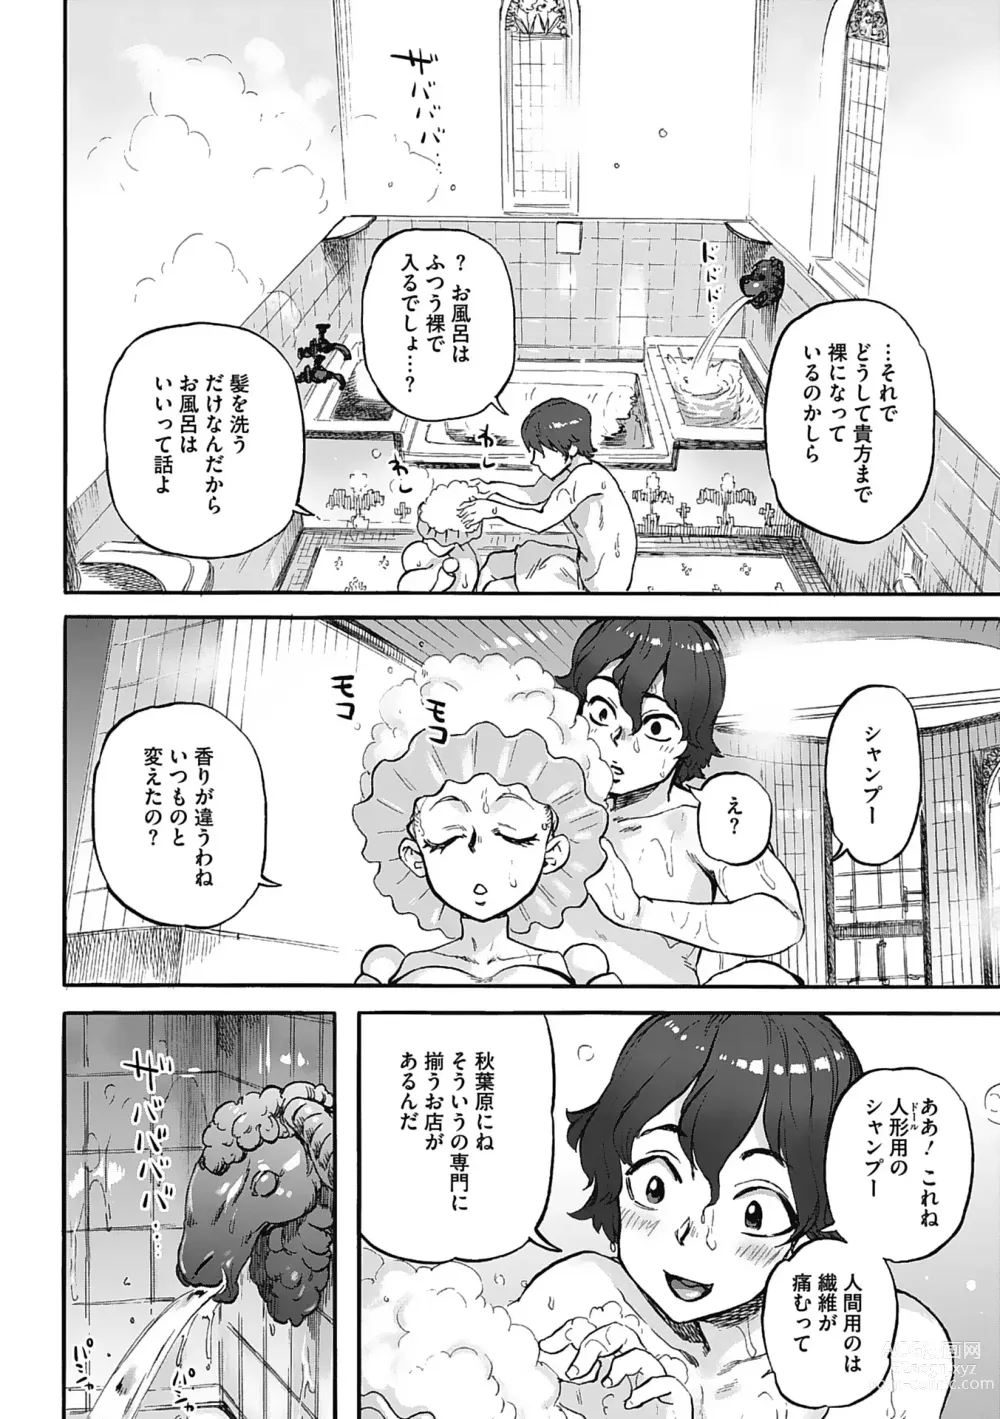 Page 190 of manga Oumagatoki - Ishu Konin Roman Tan -